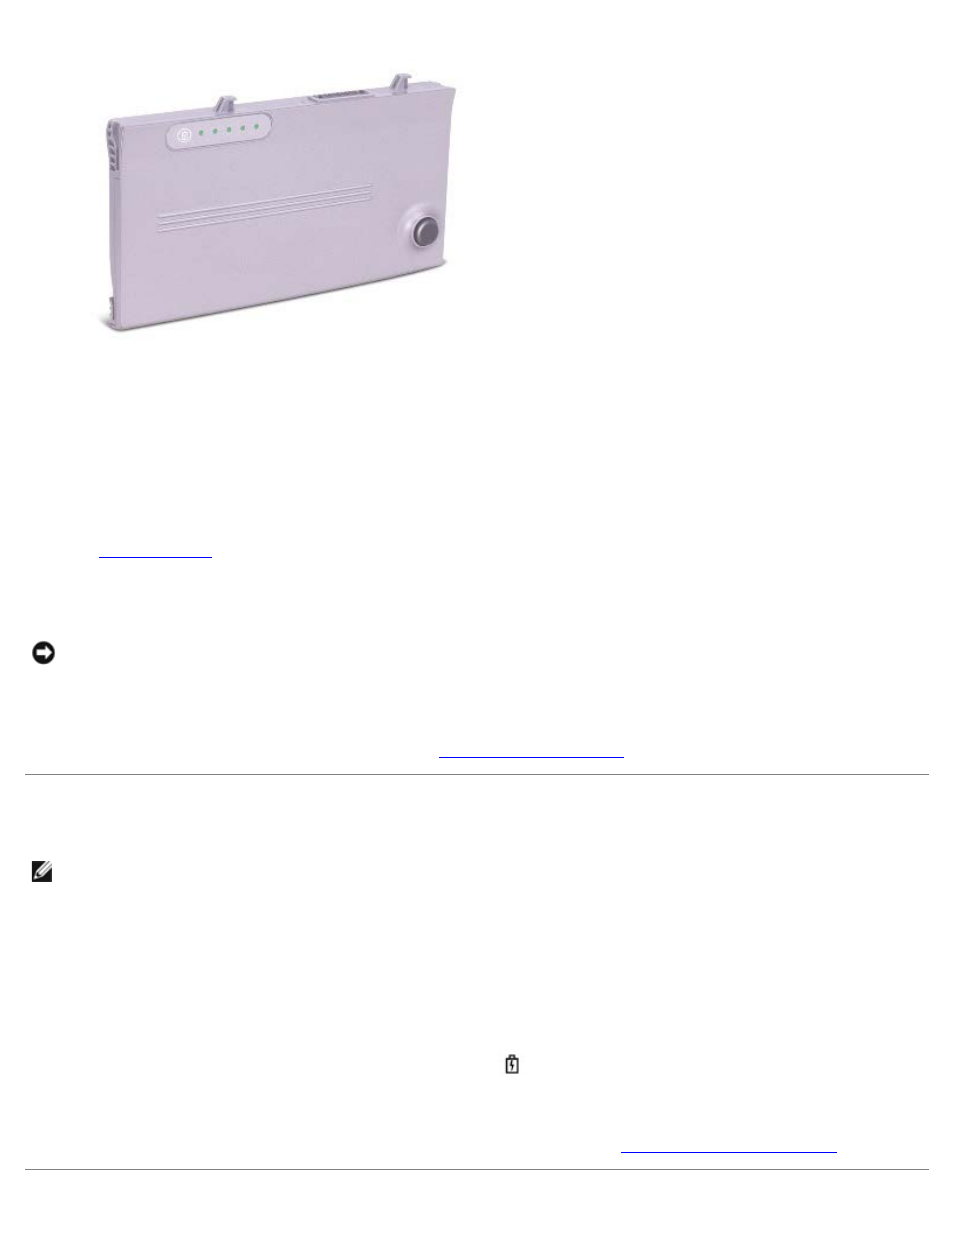 Carga de la batería, Carga de la batería esté baja, Medidor de estado | Advertencia de batería baja | Dell LATITUDE D400 Manual del usuario | Página 69 / 103